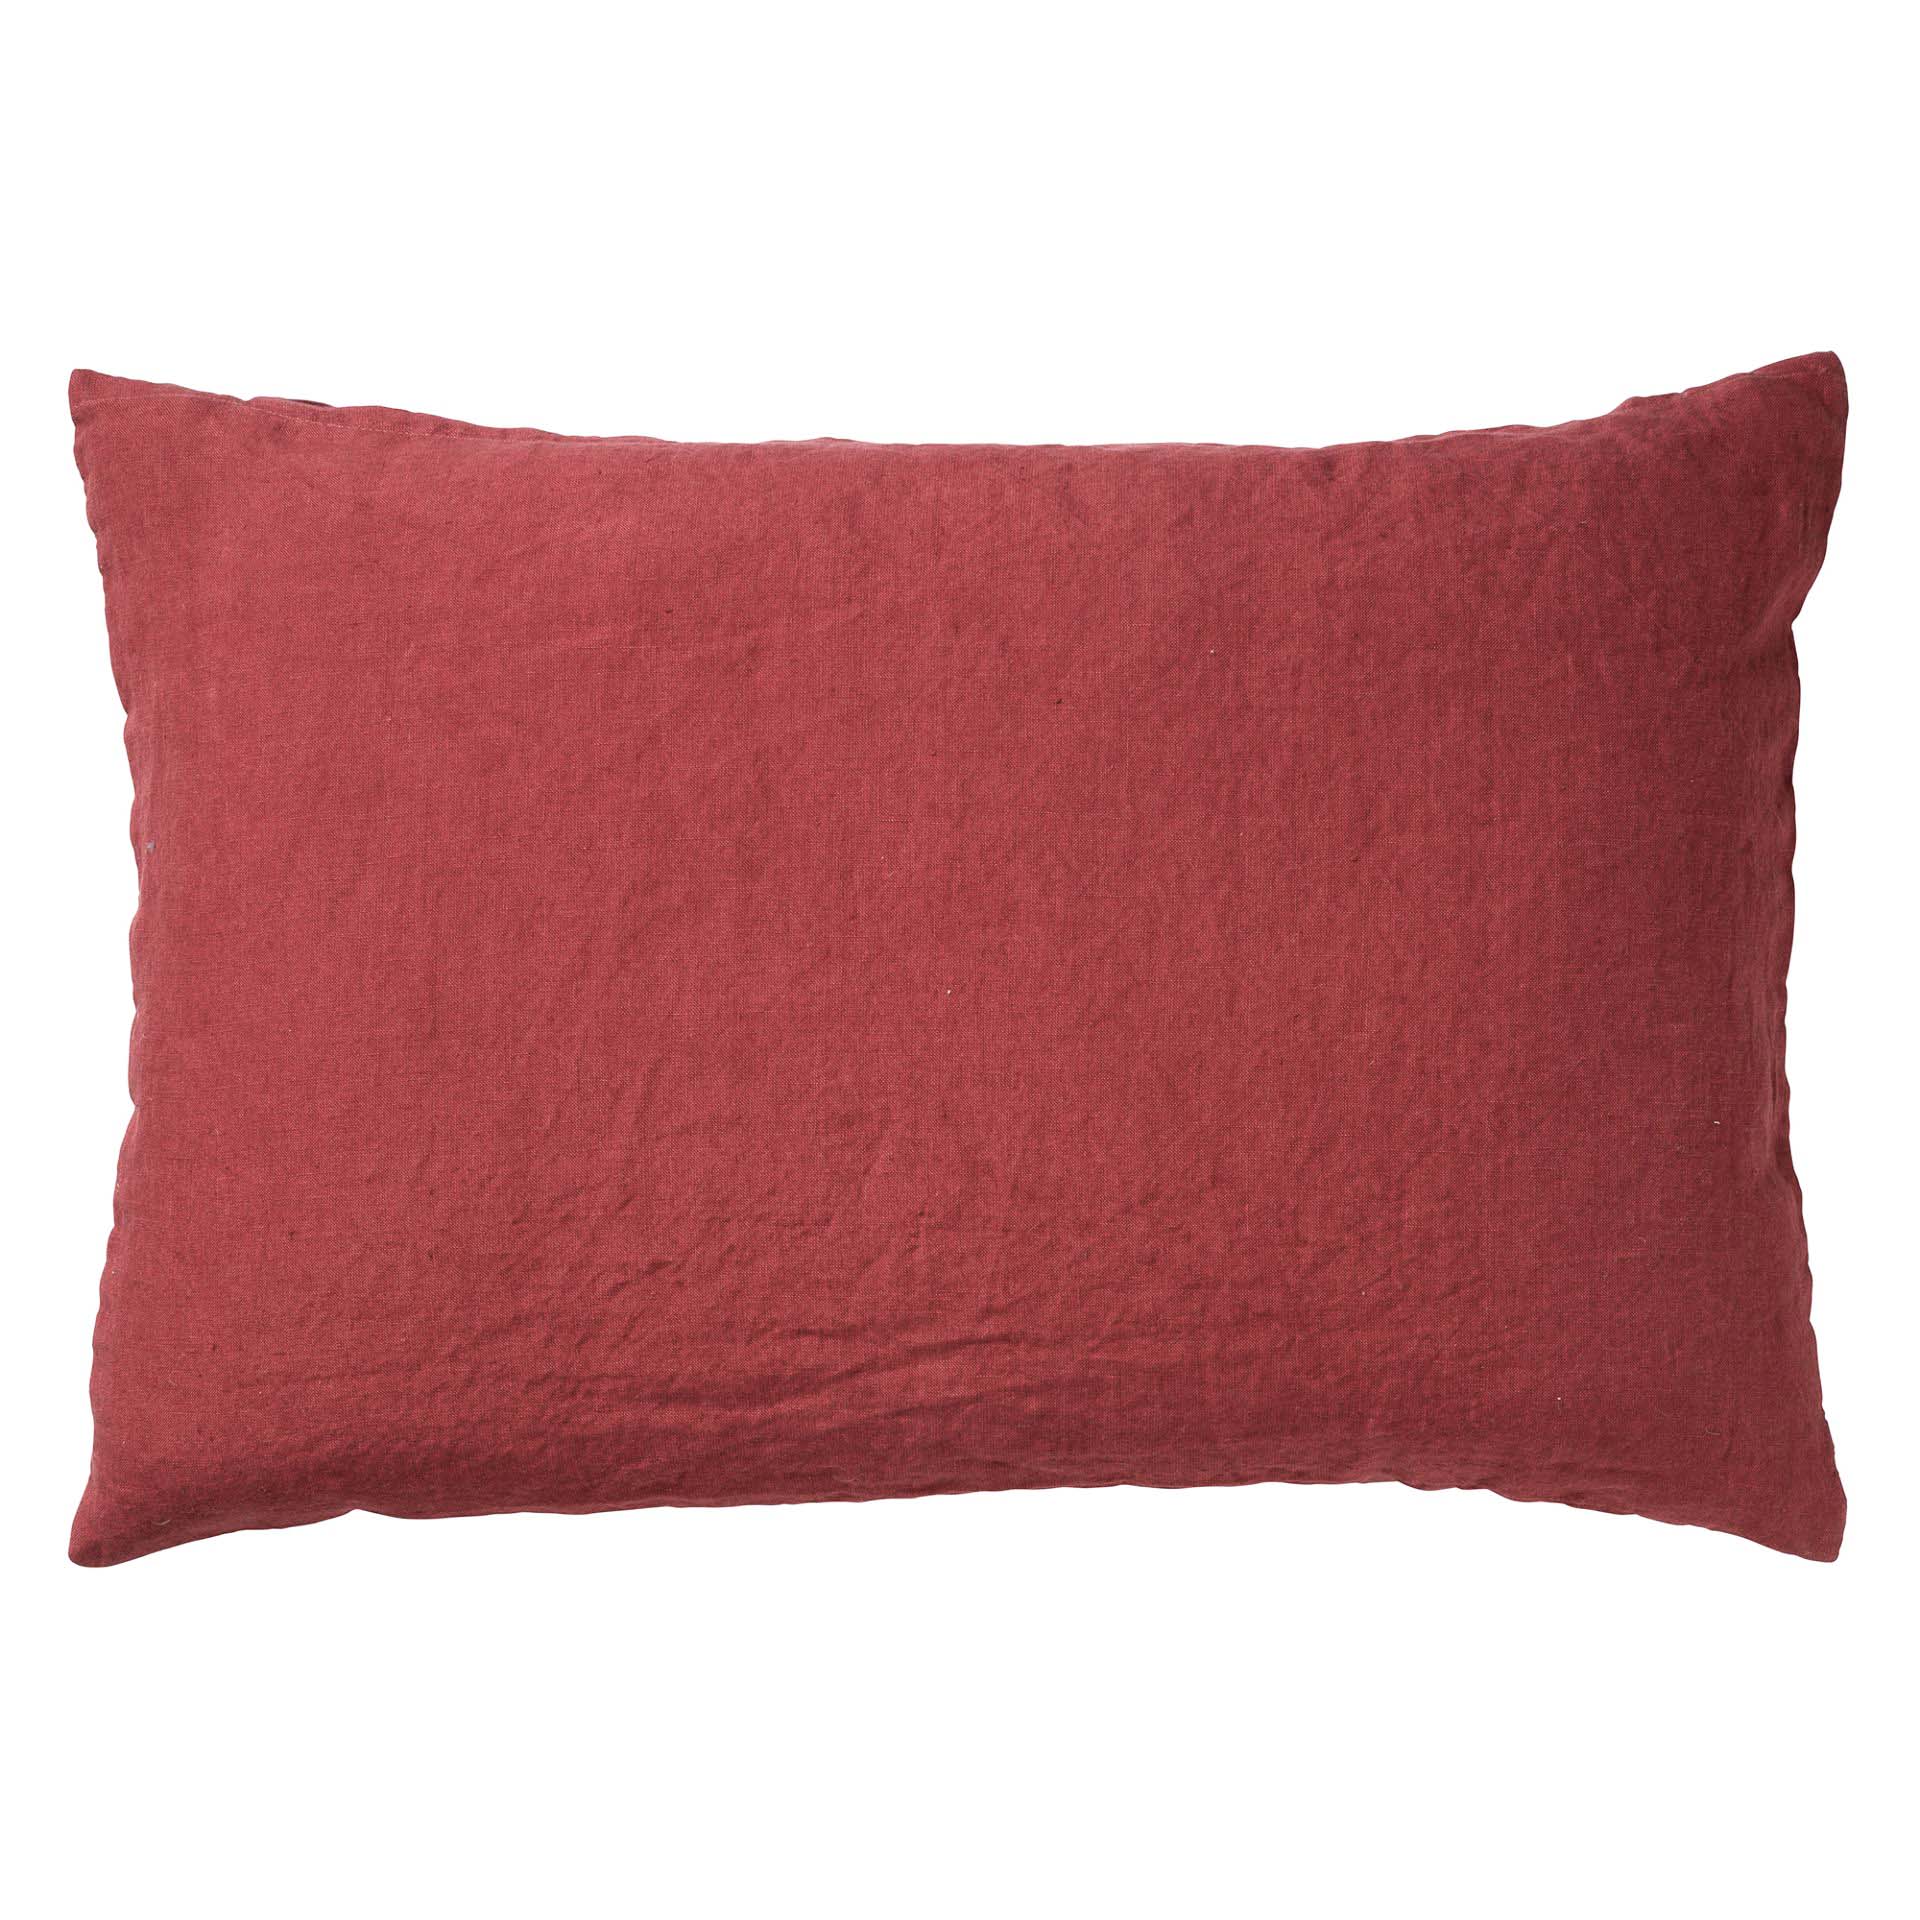 LINN - Sierkussen 40x60 cm - 100% linnen - Merlot - rood